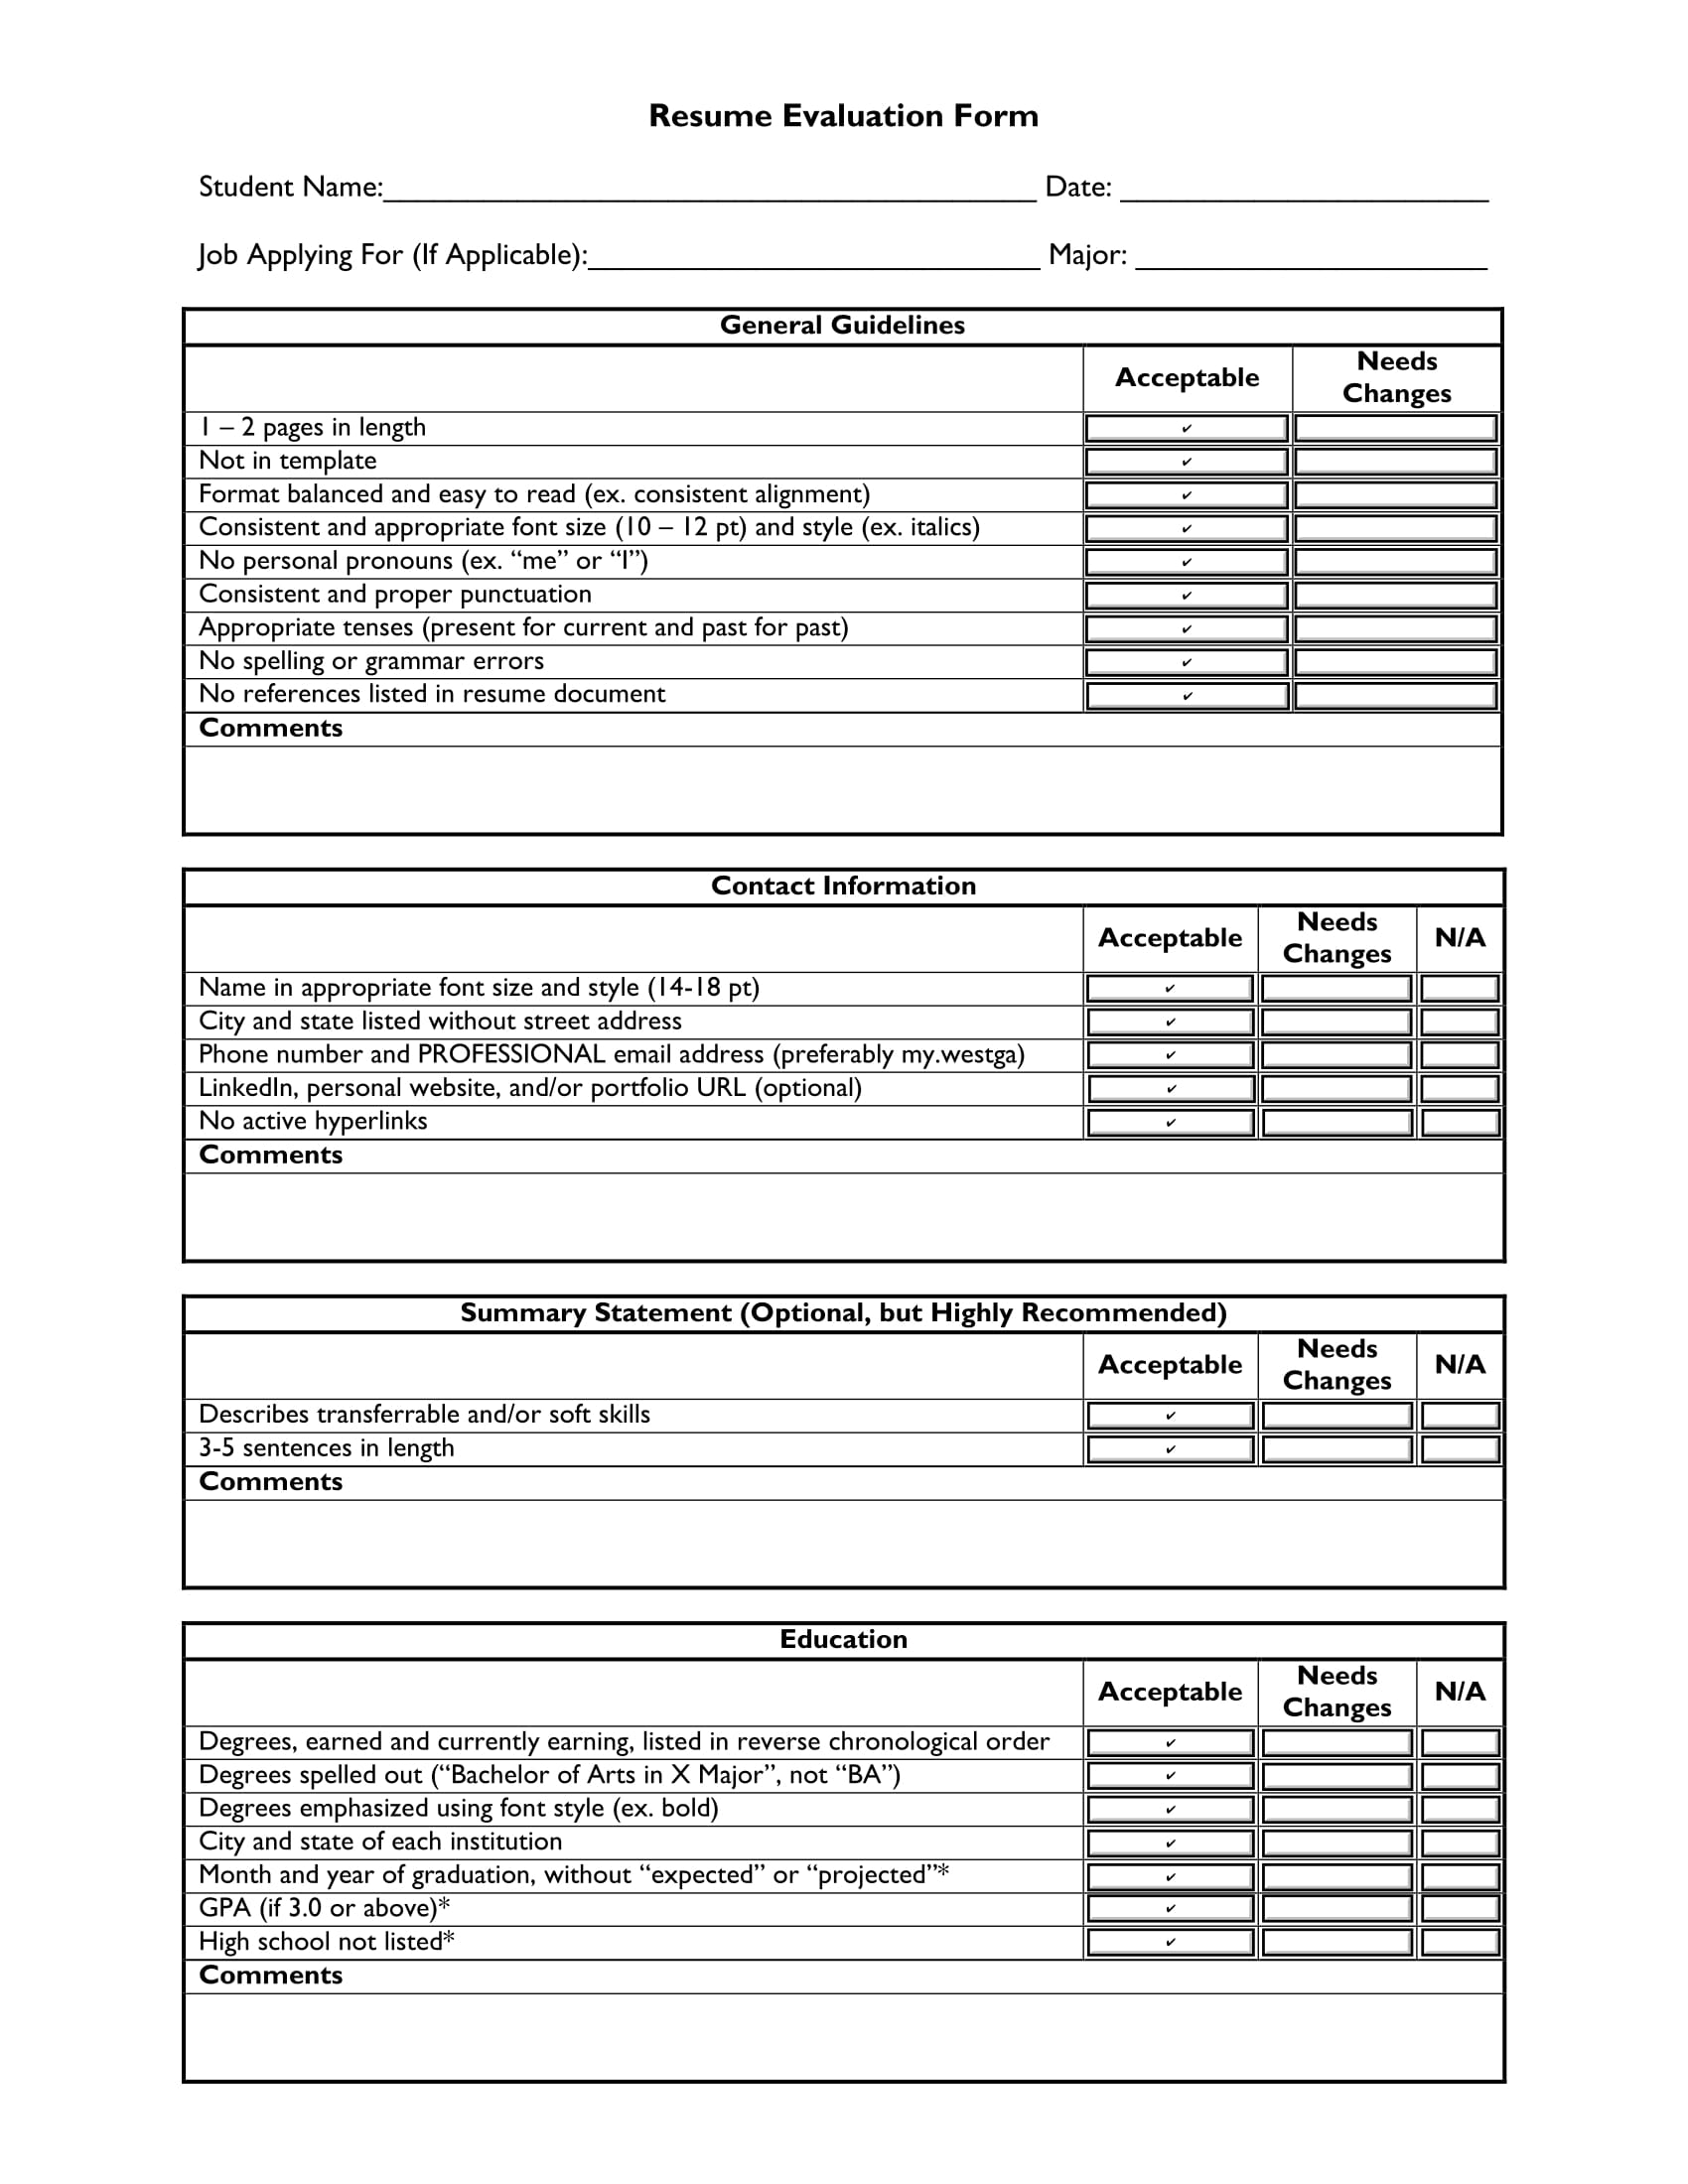 resume evaluation form sample 1